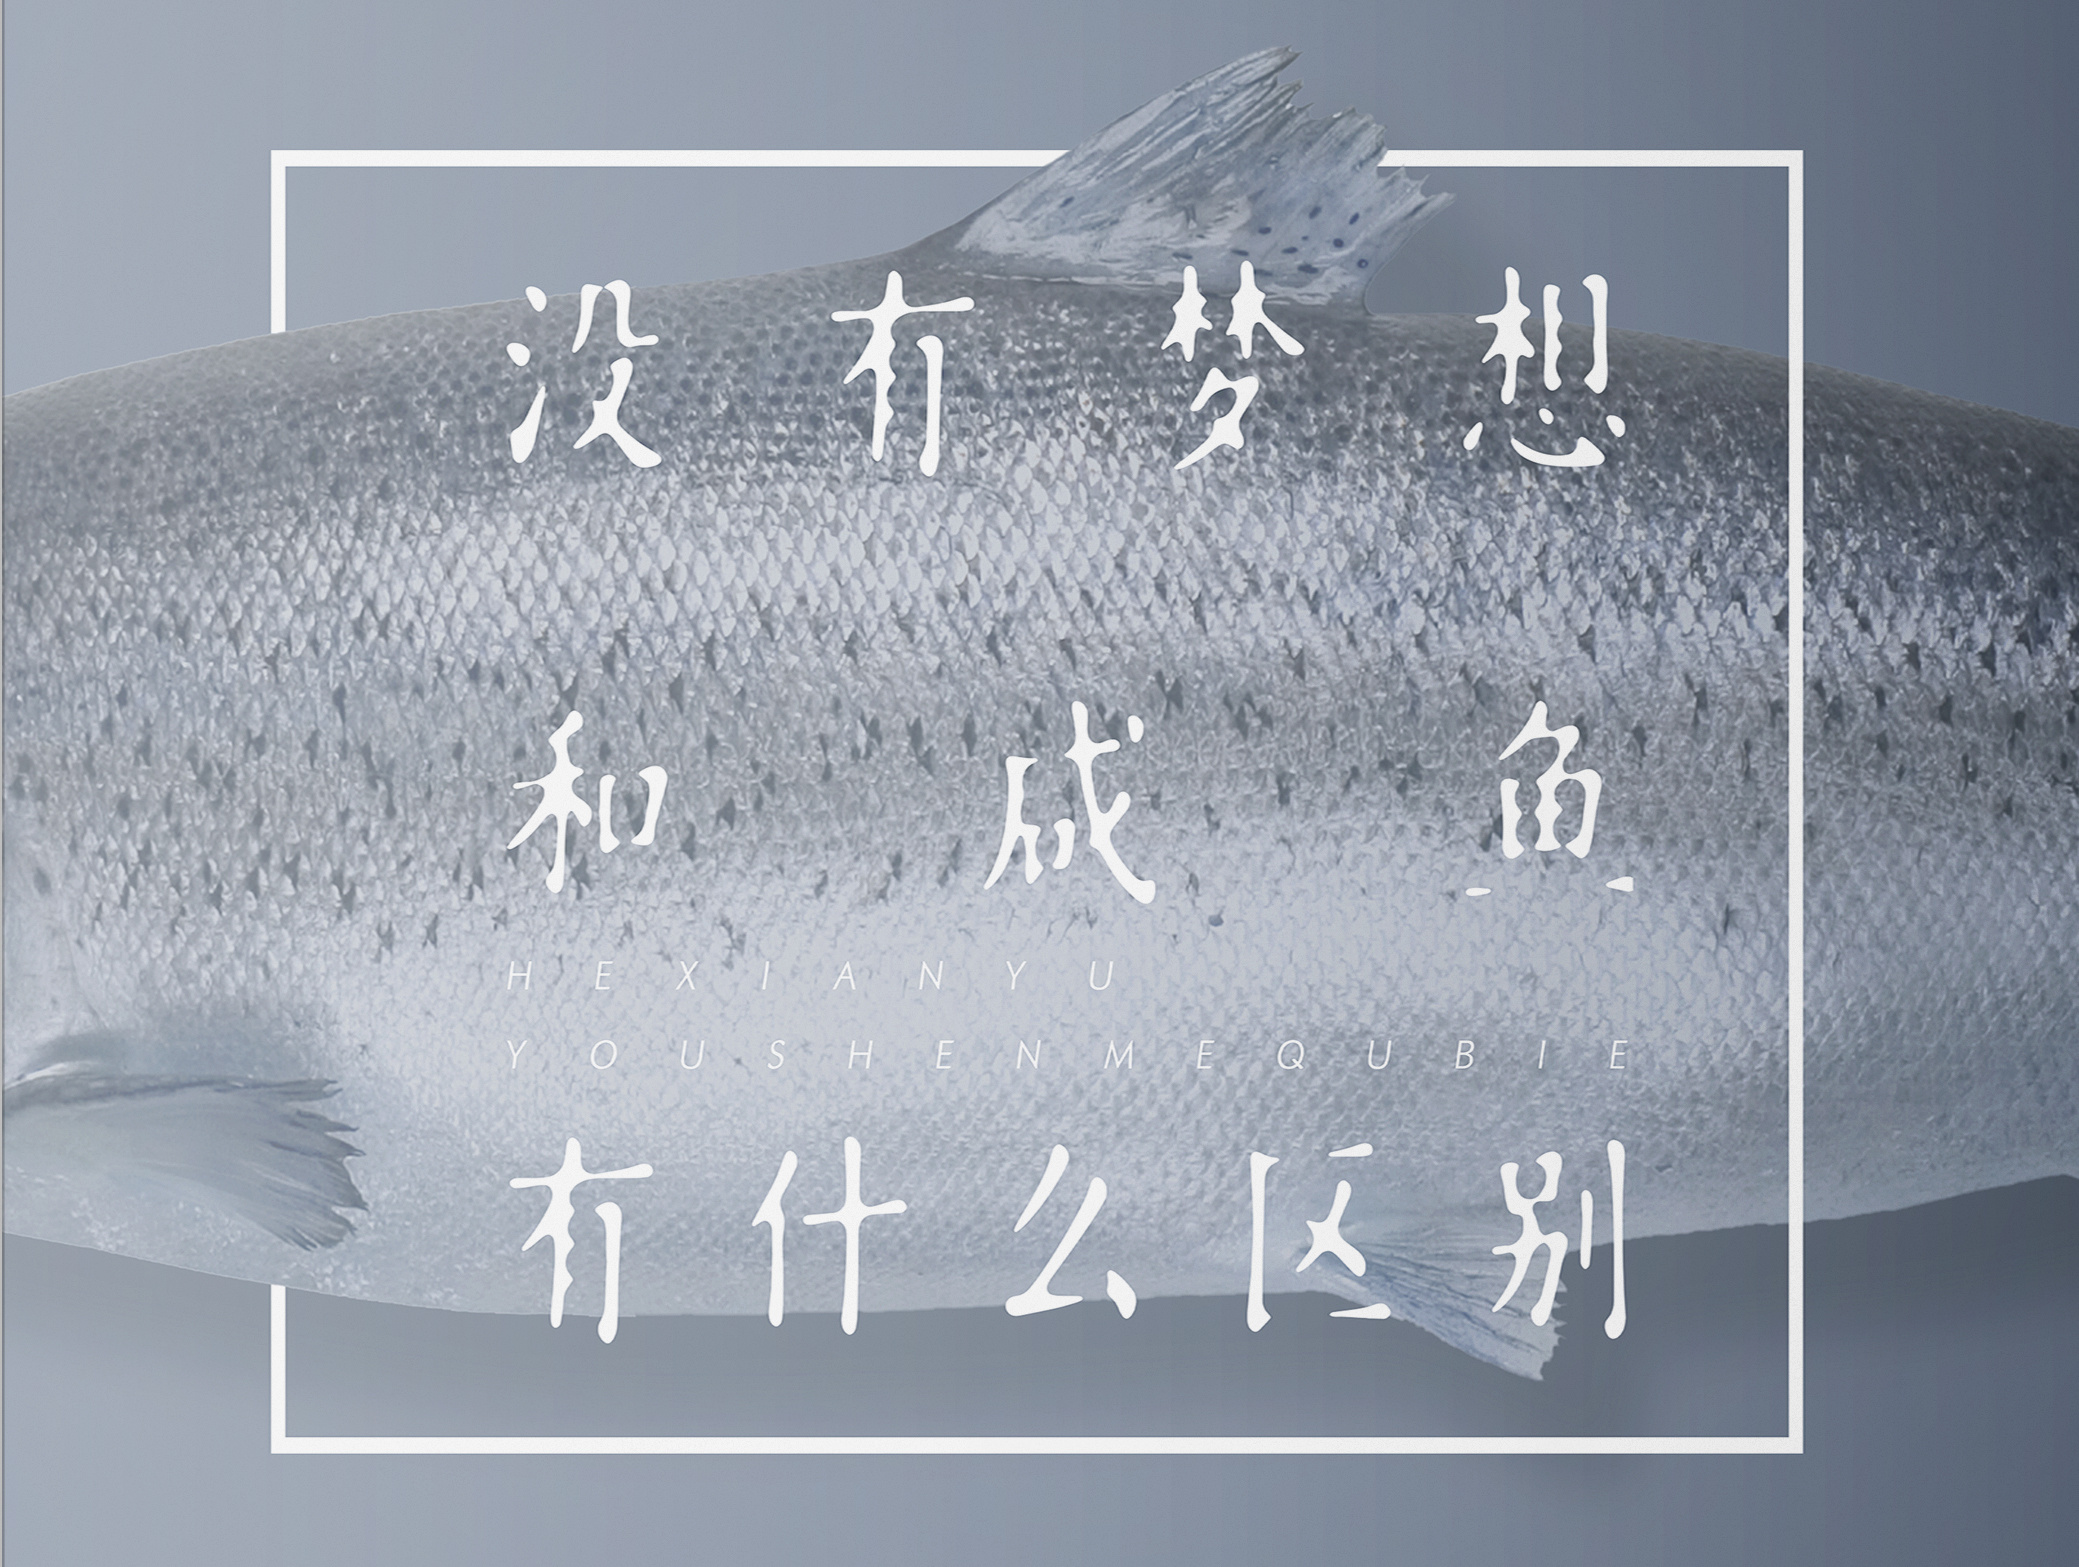 创意梦想咸鱼企业励志文化展板图片_企业文化海报_海报设计-图行天下素材网